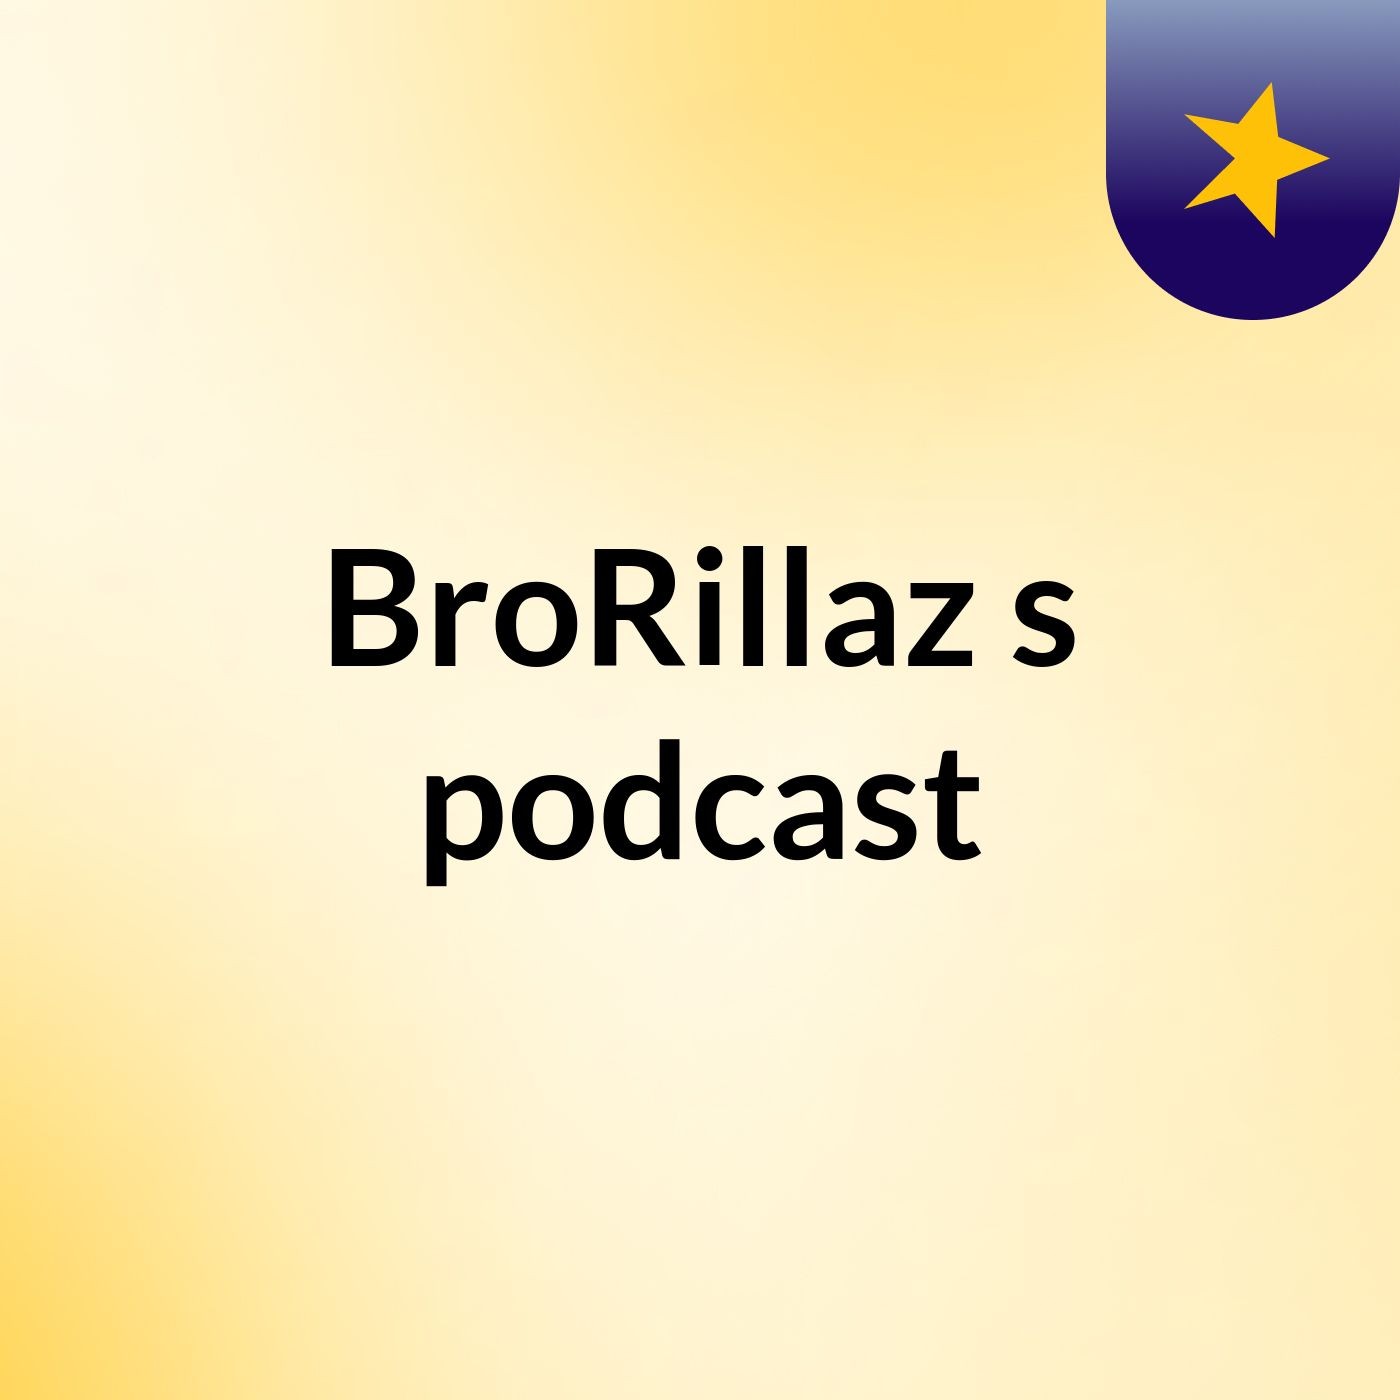 BroRillaz's podcast